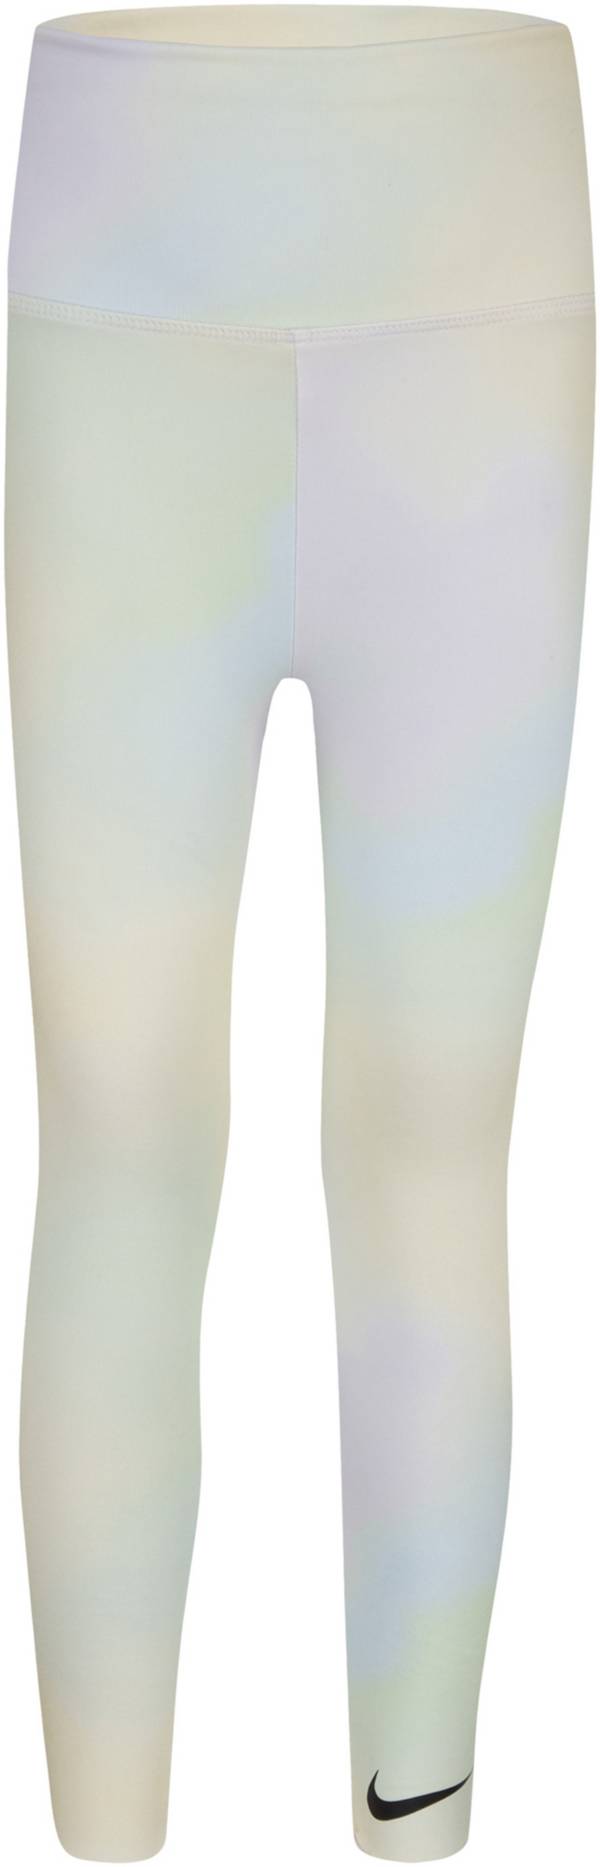 Nike Toddler Girls' Aura Leggings product image